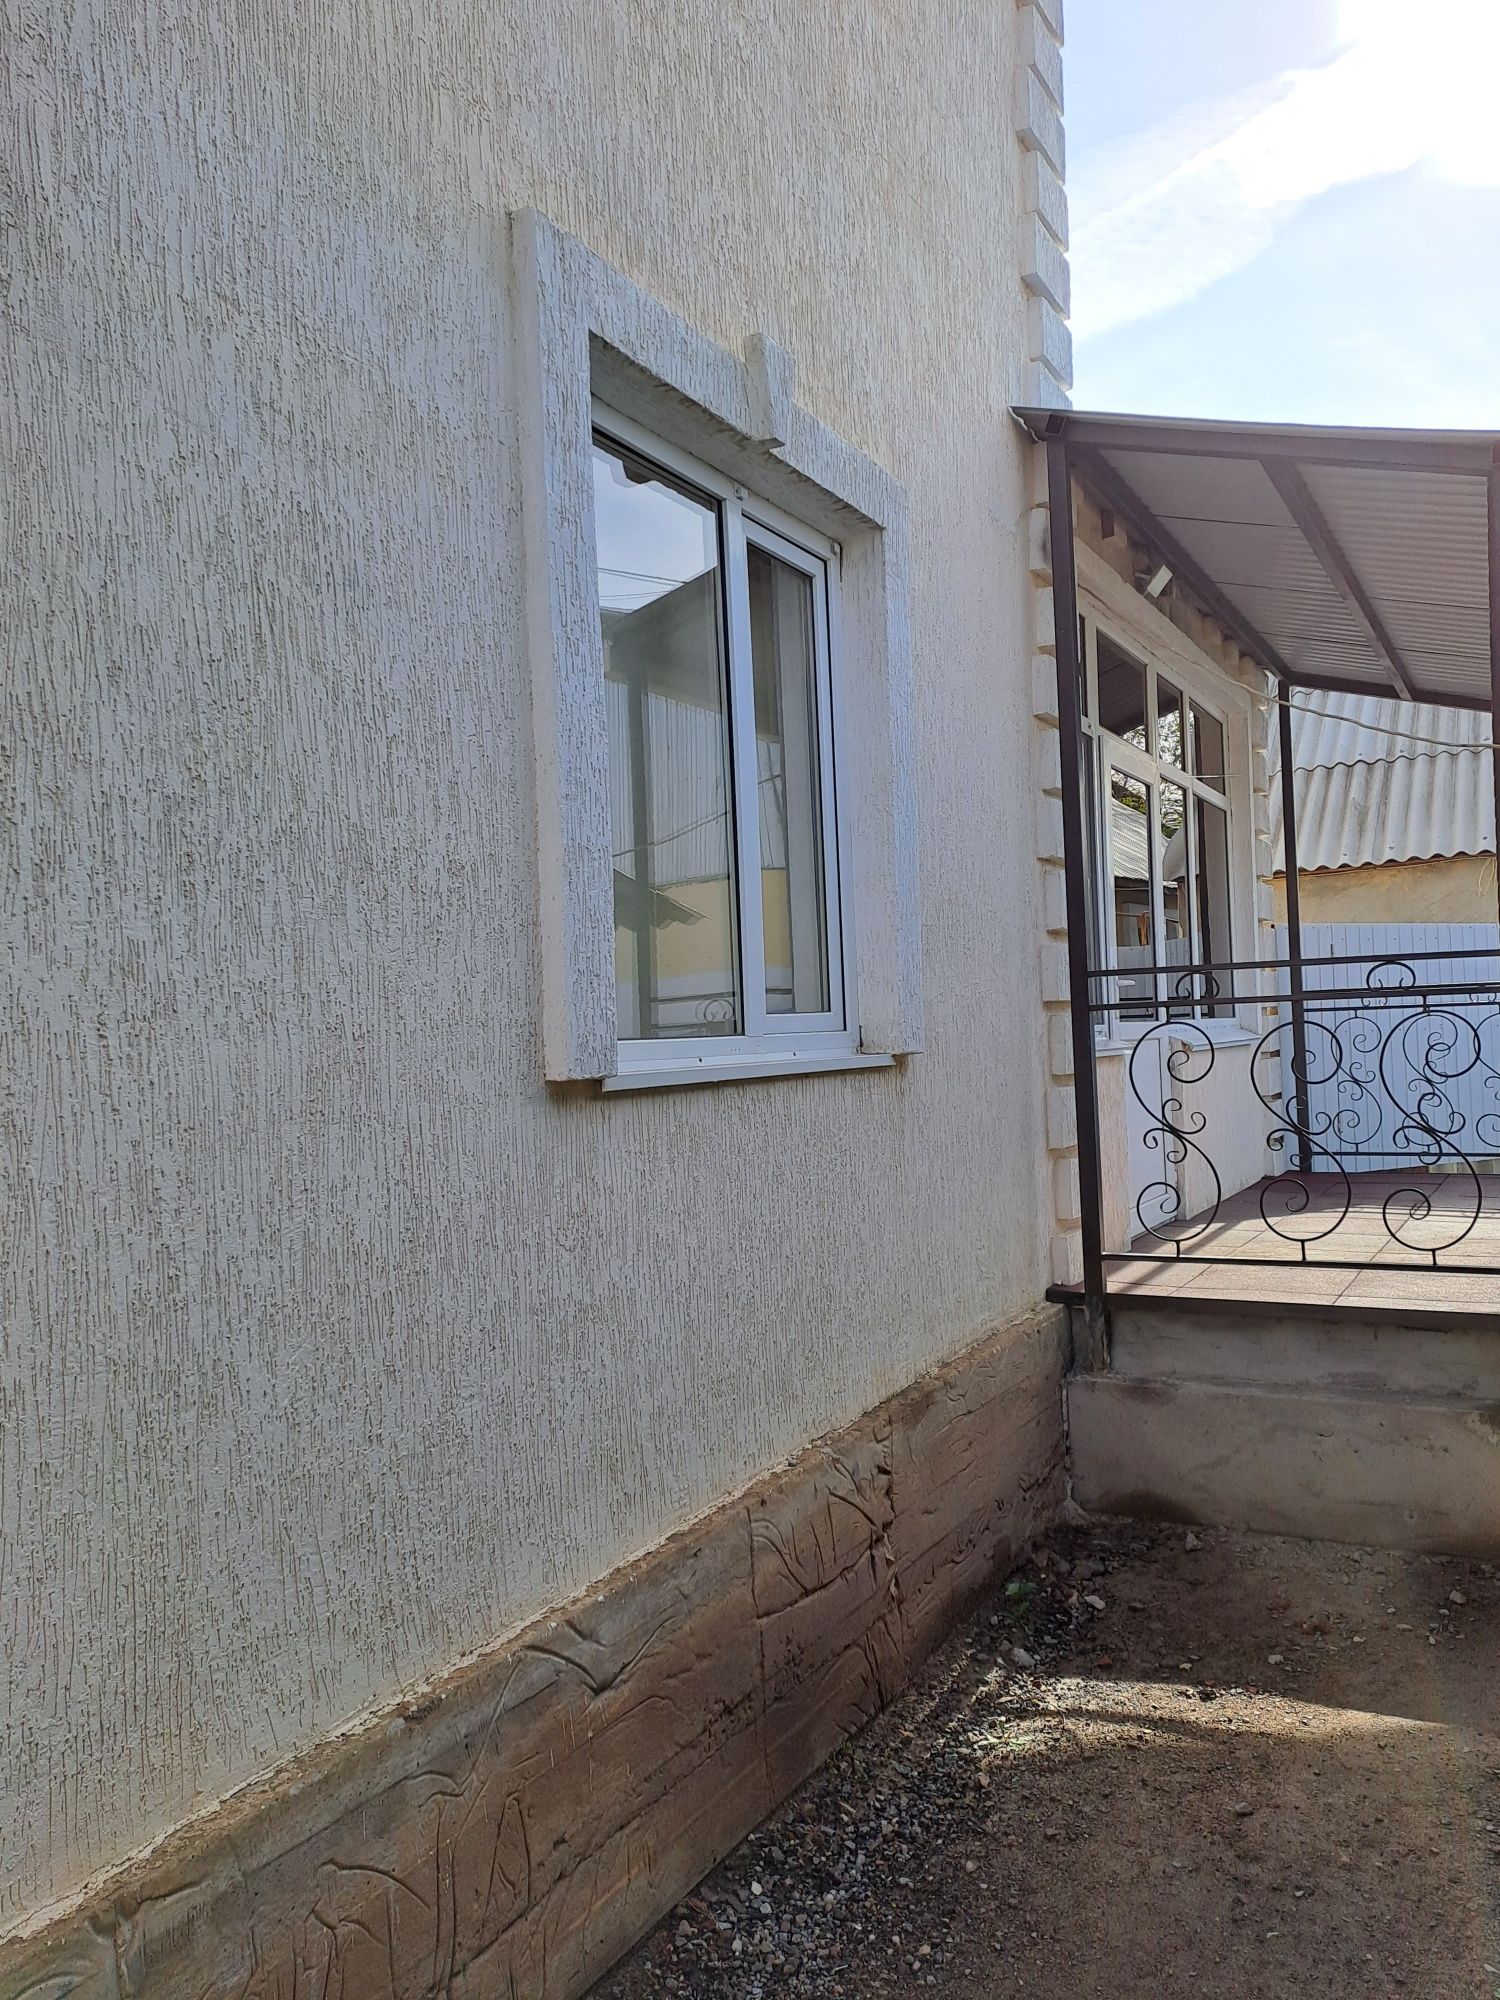 Продаётся дом, в районе Кожесырьевого, с хорошим ремонтом